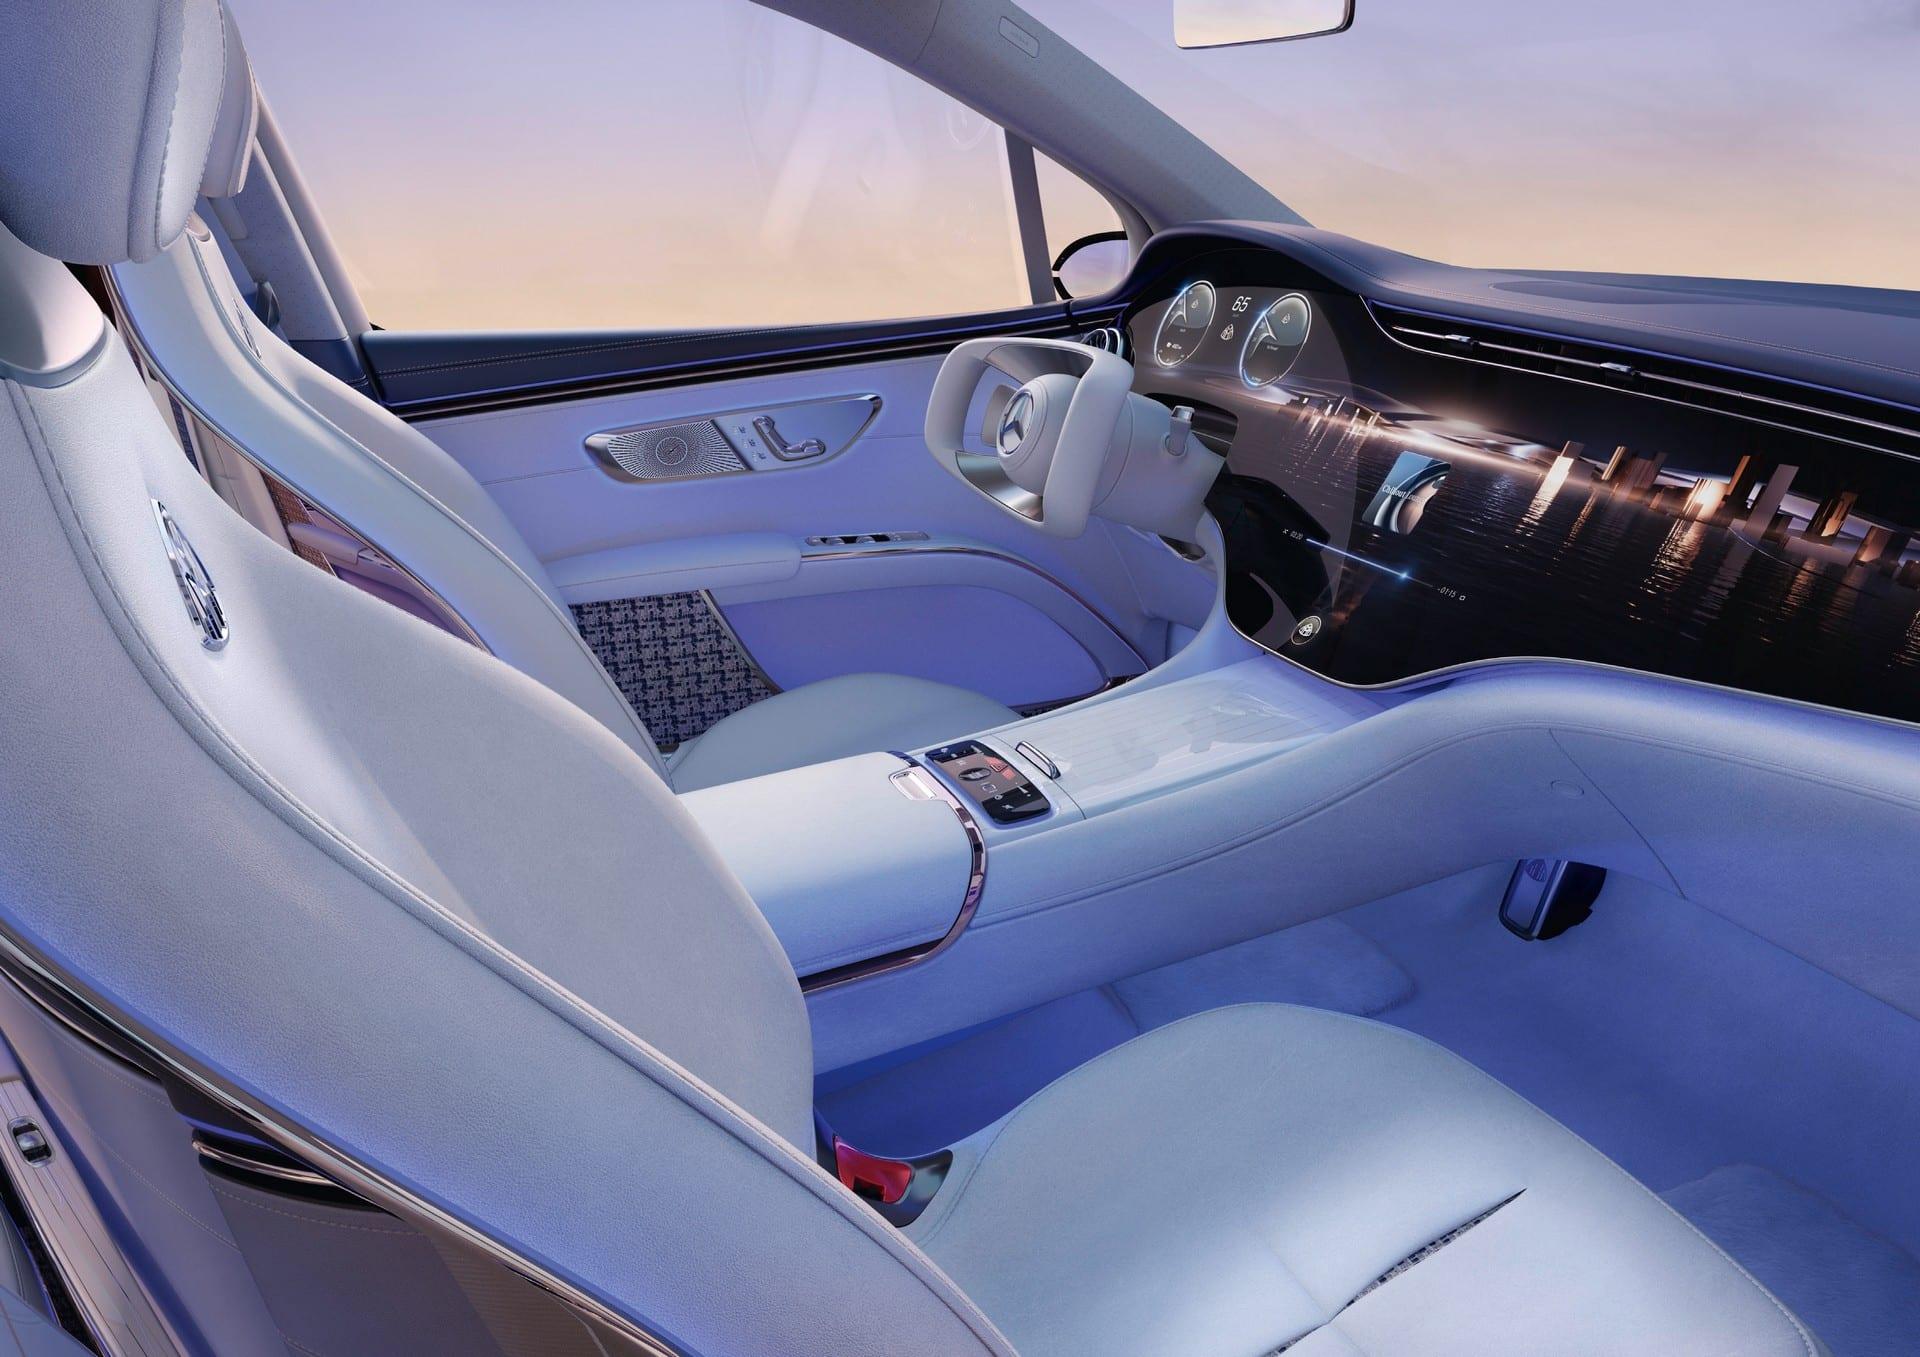 Mercedes-Maybach EQS SUV Concept - SUV siêu sang chạy điện cho tương lai mercedes-maybach-eqs-suv-concept-208.jpeg